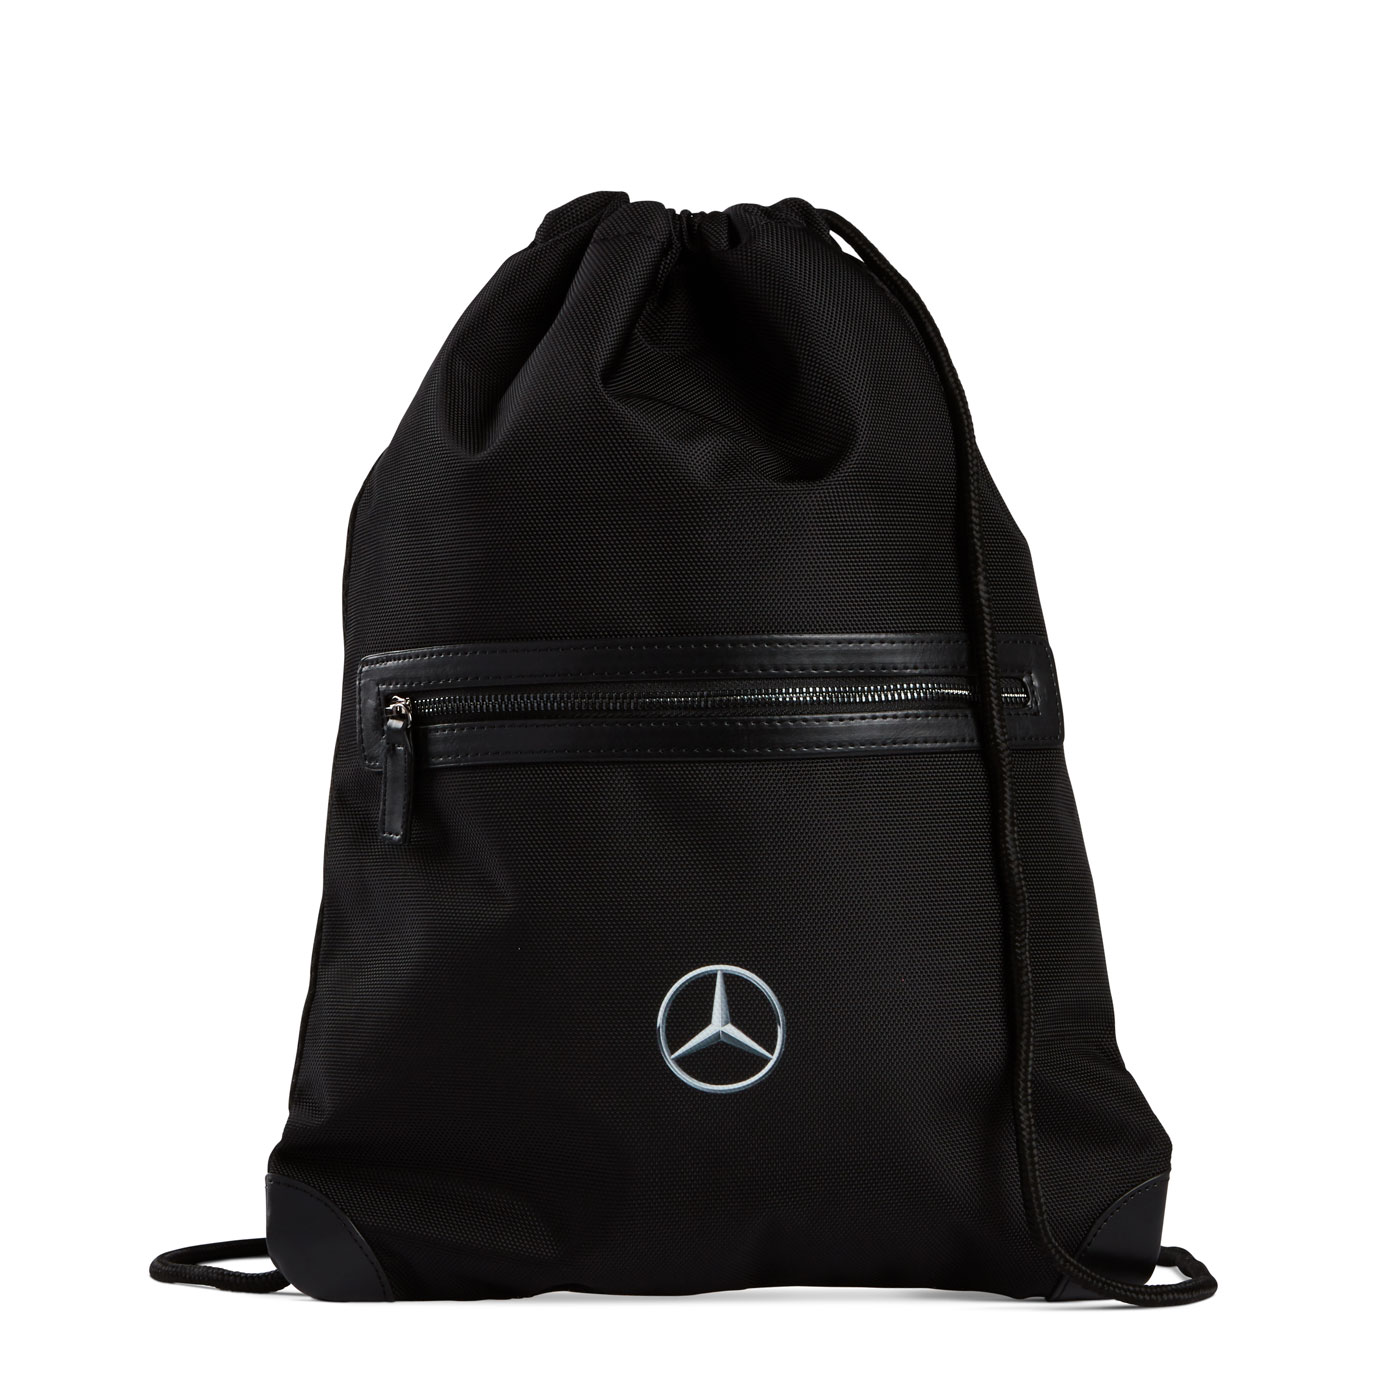 AMG Mercedes Drawstring Bag Backpack 